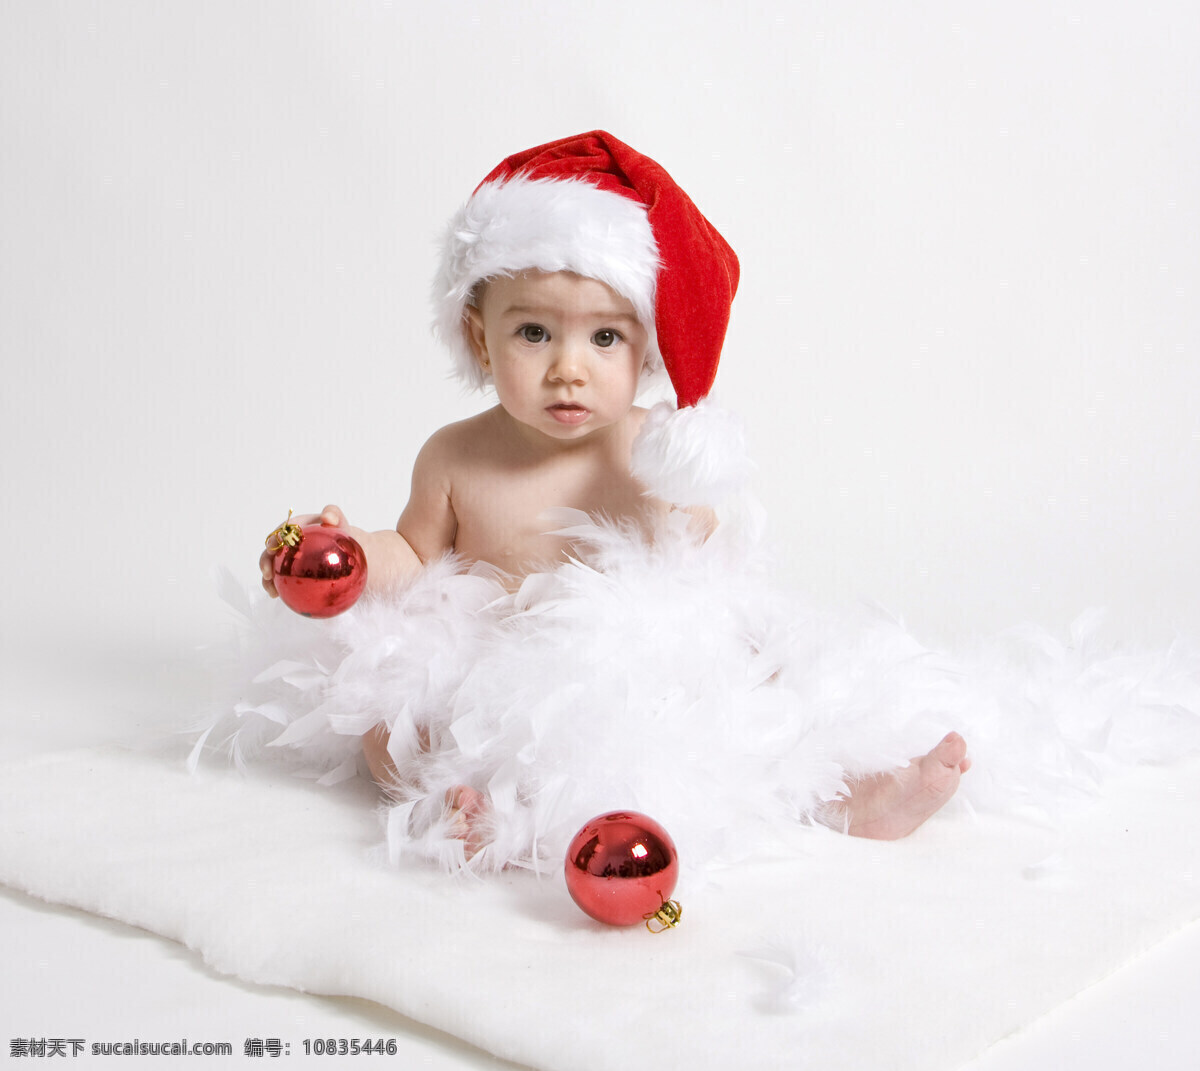 圣诞 吊球 婴儿 拿着圣诞吊球 彩球 圣诞帽 儿童 儿童图片 人物图片